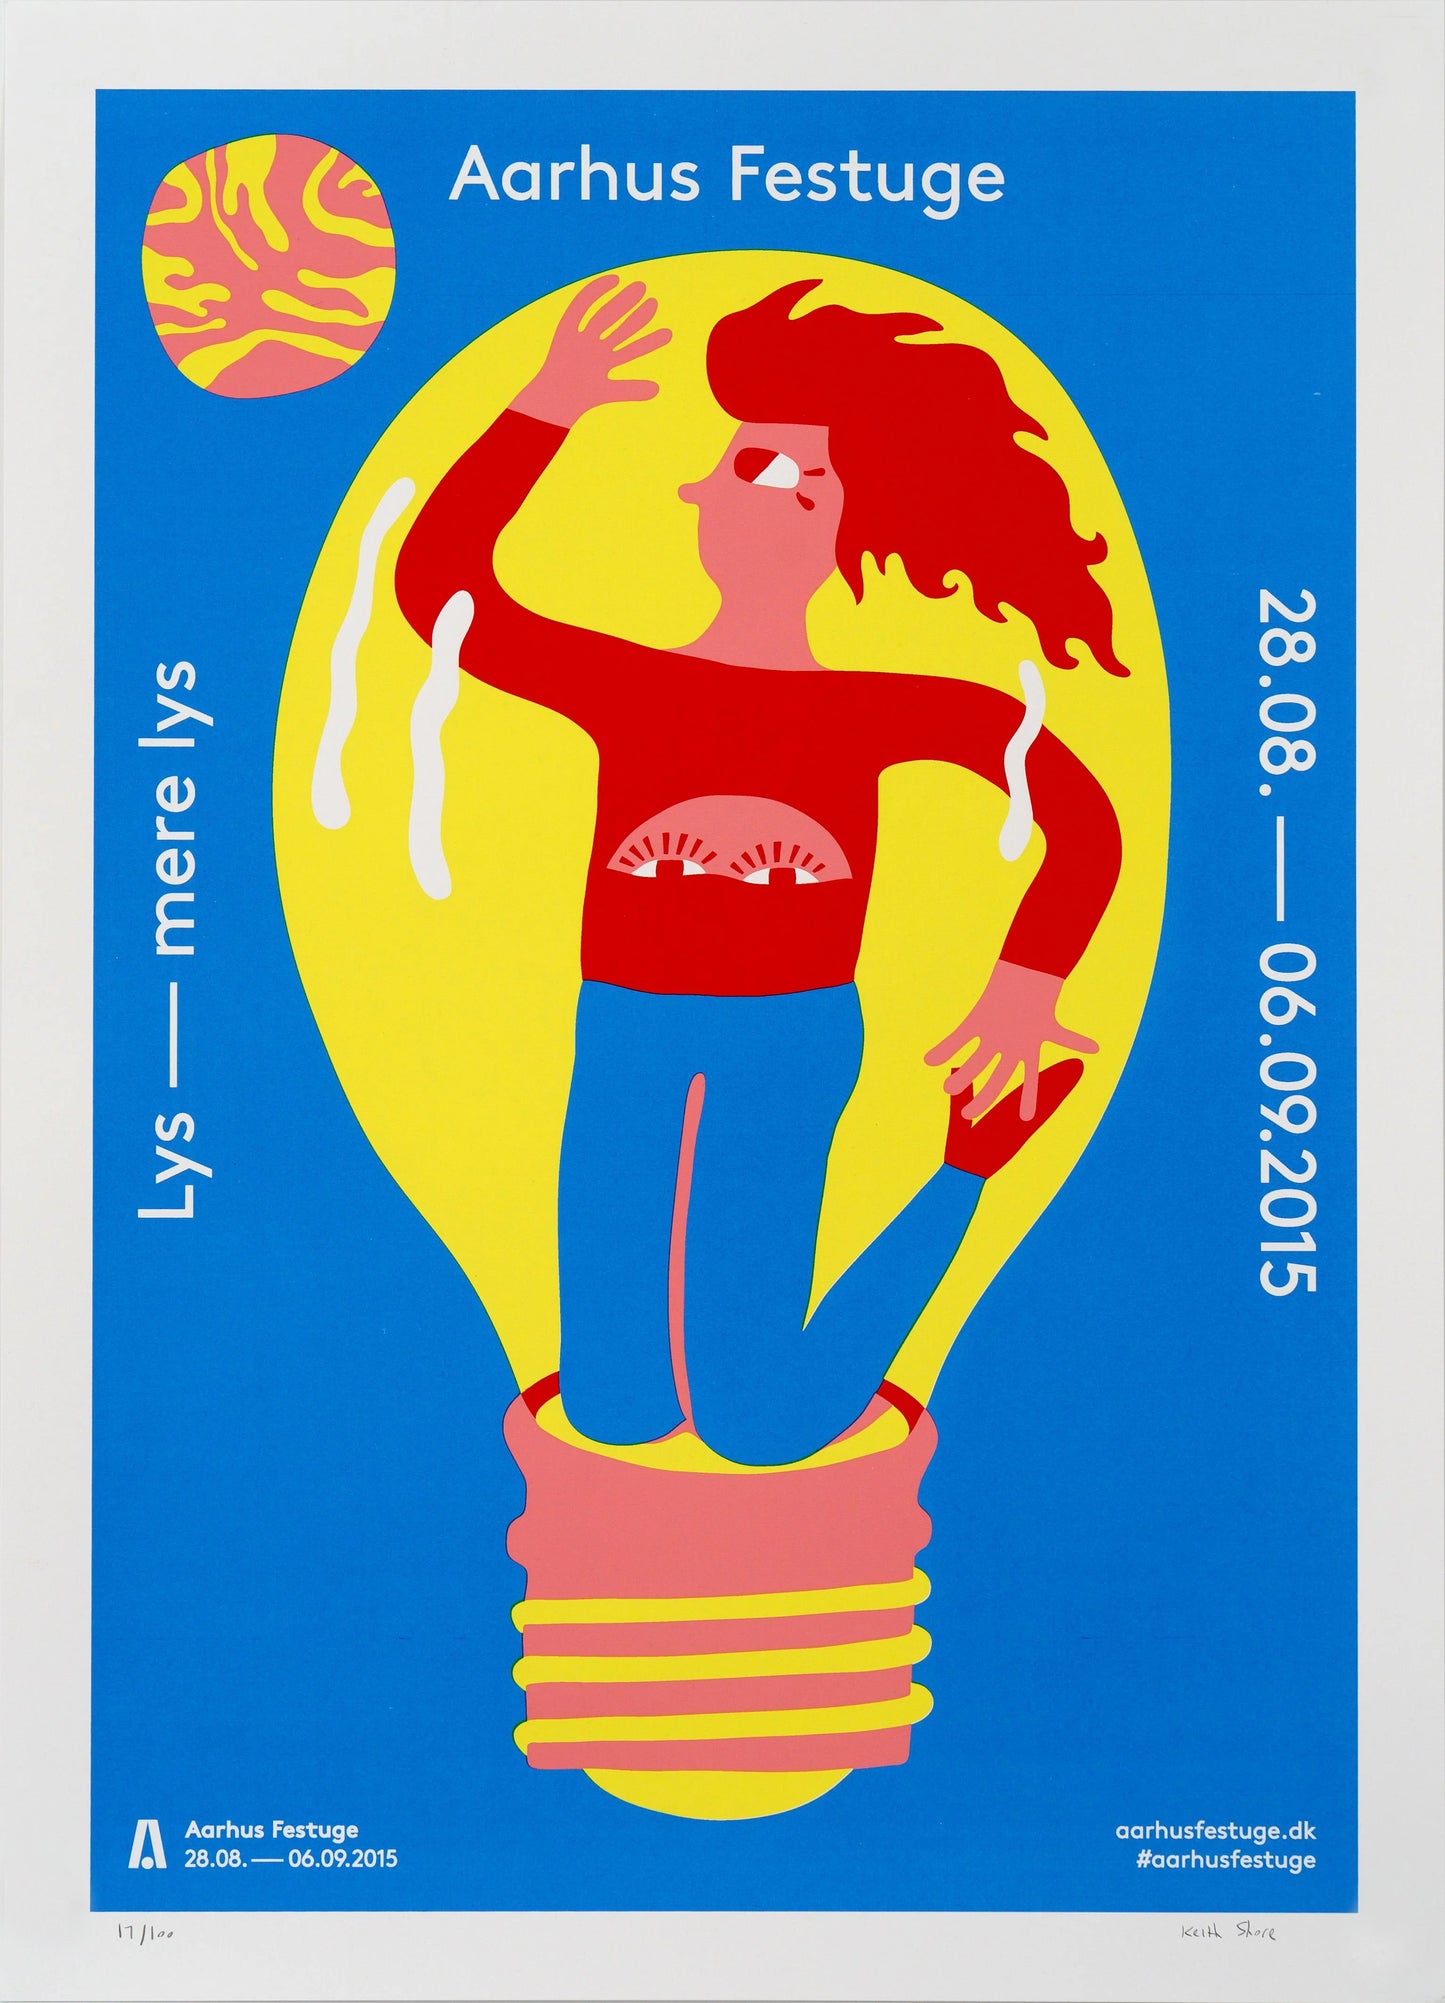 Keith Shore - Særtryk af Aarhus Festuges plakat 2015